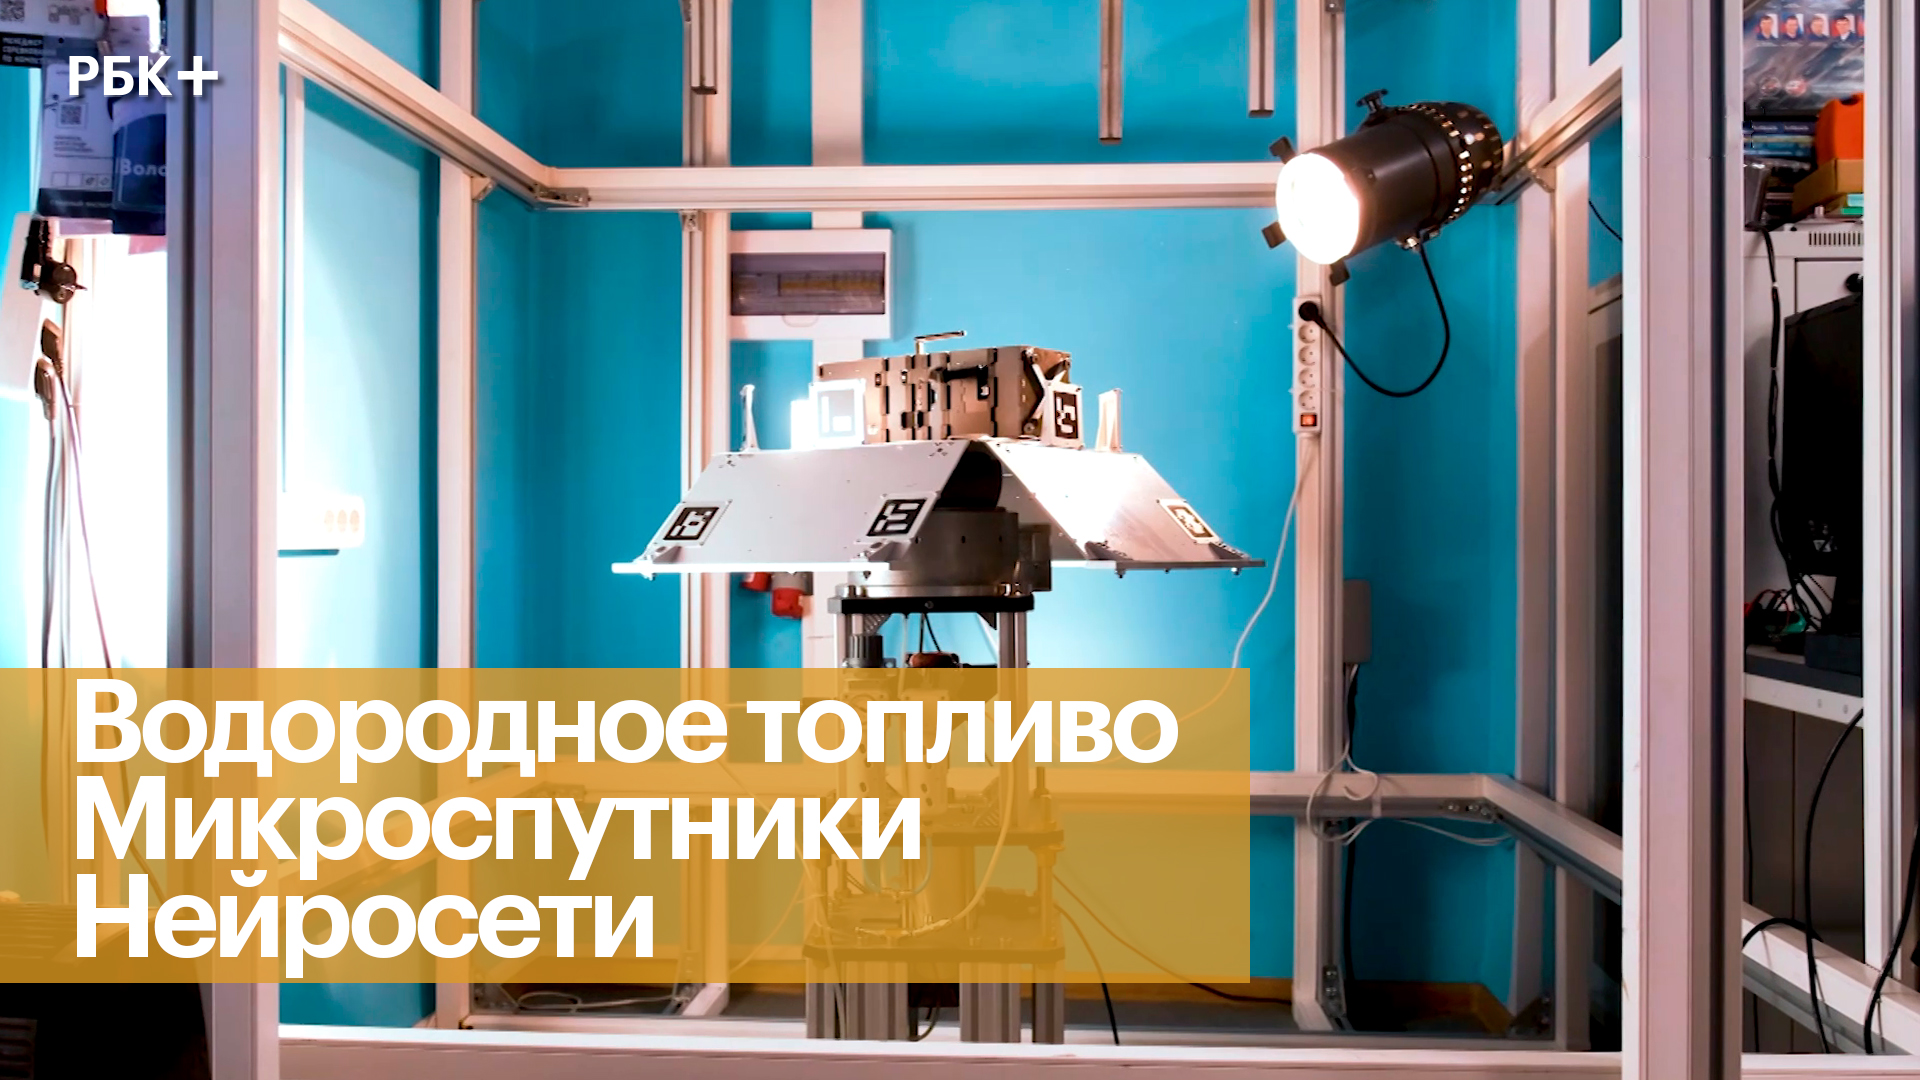 Бизнес на науке: какие технологии станут драйвером экономики России?